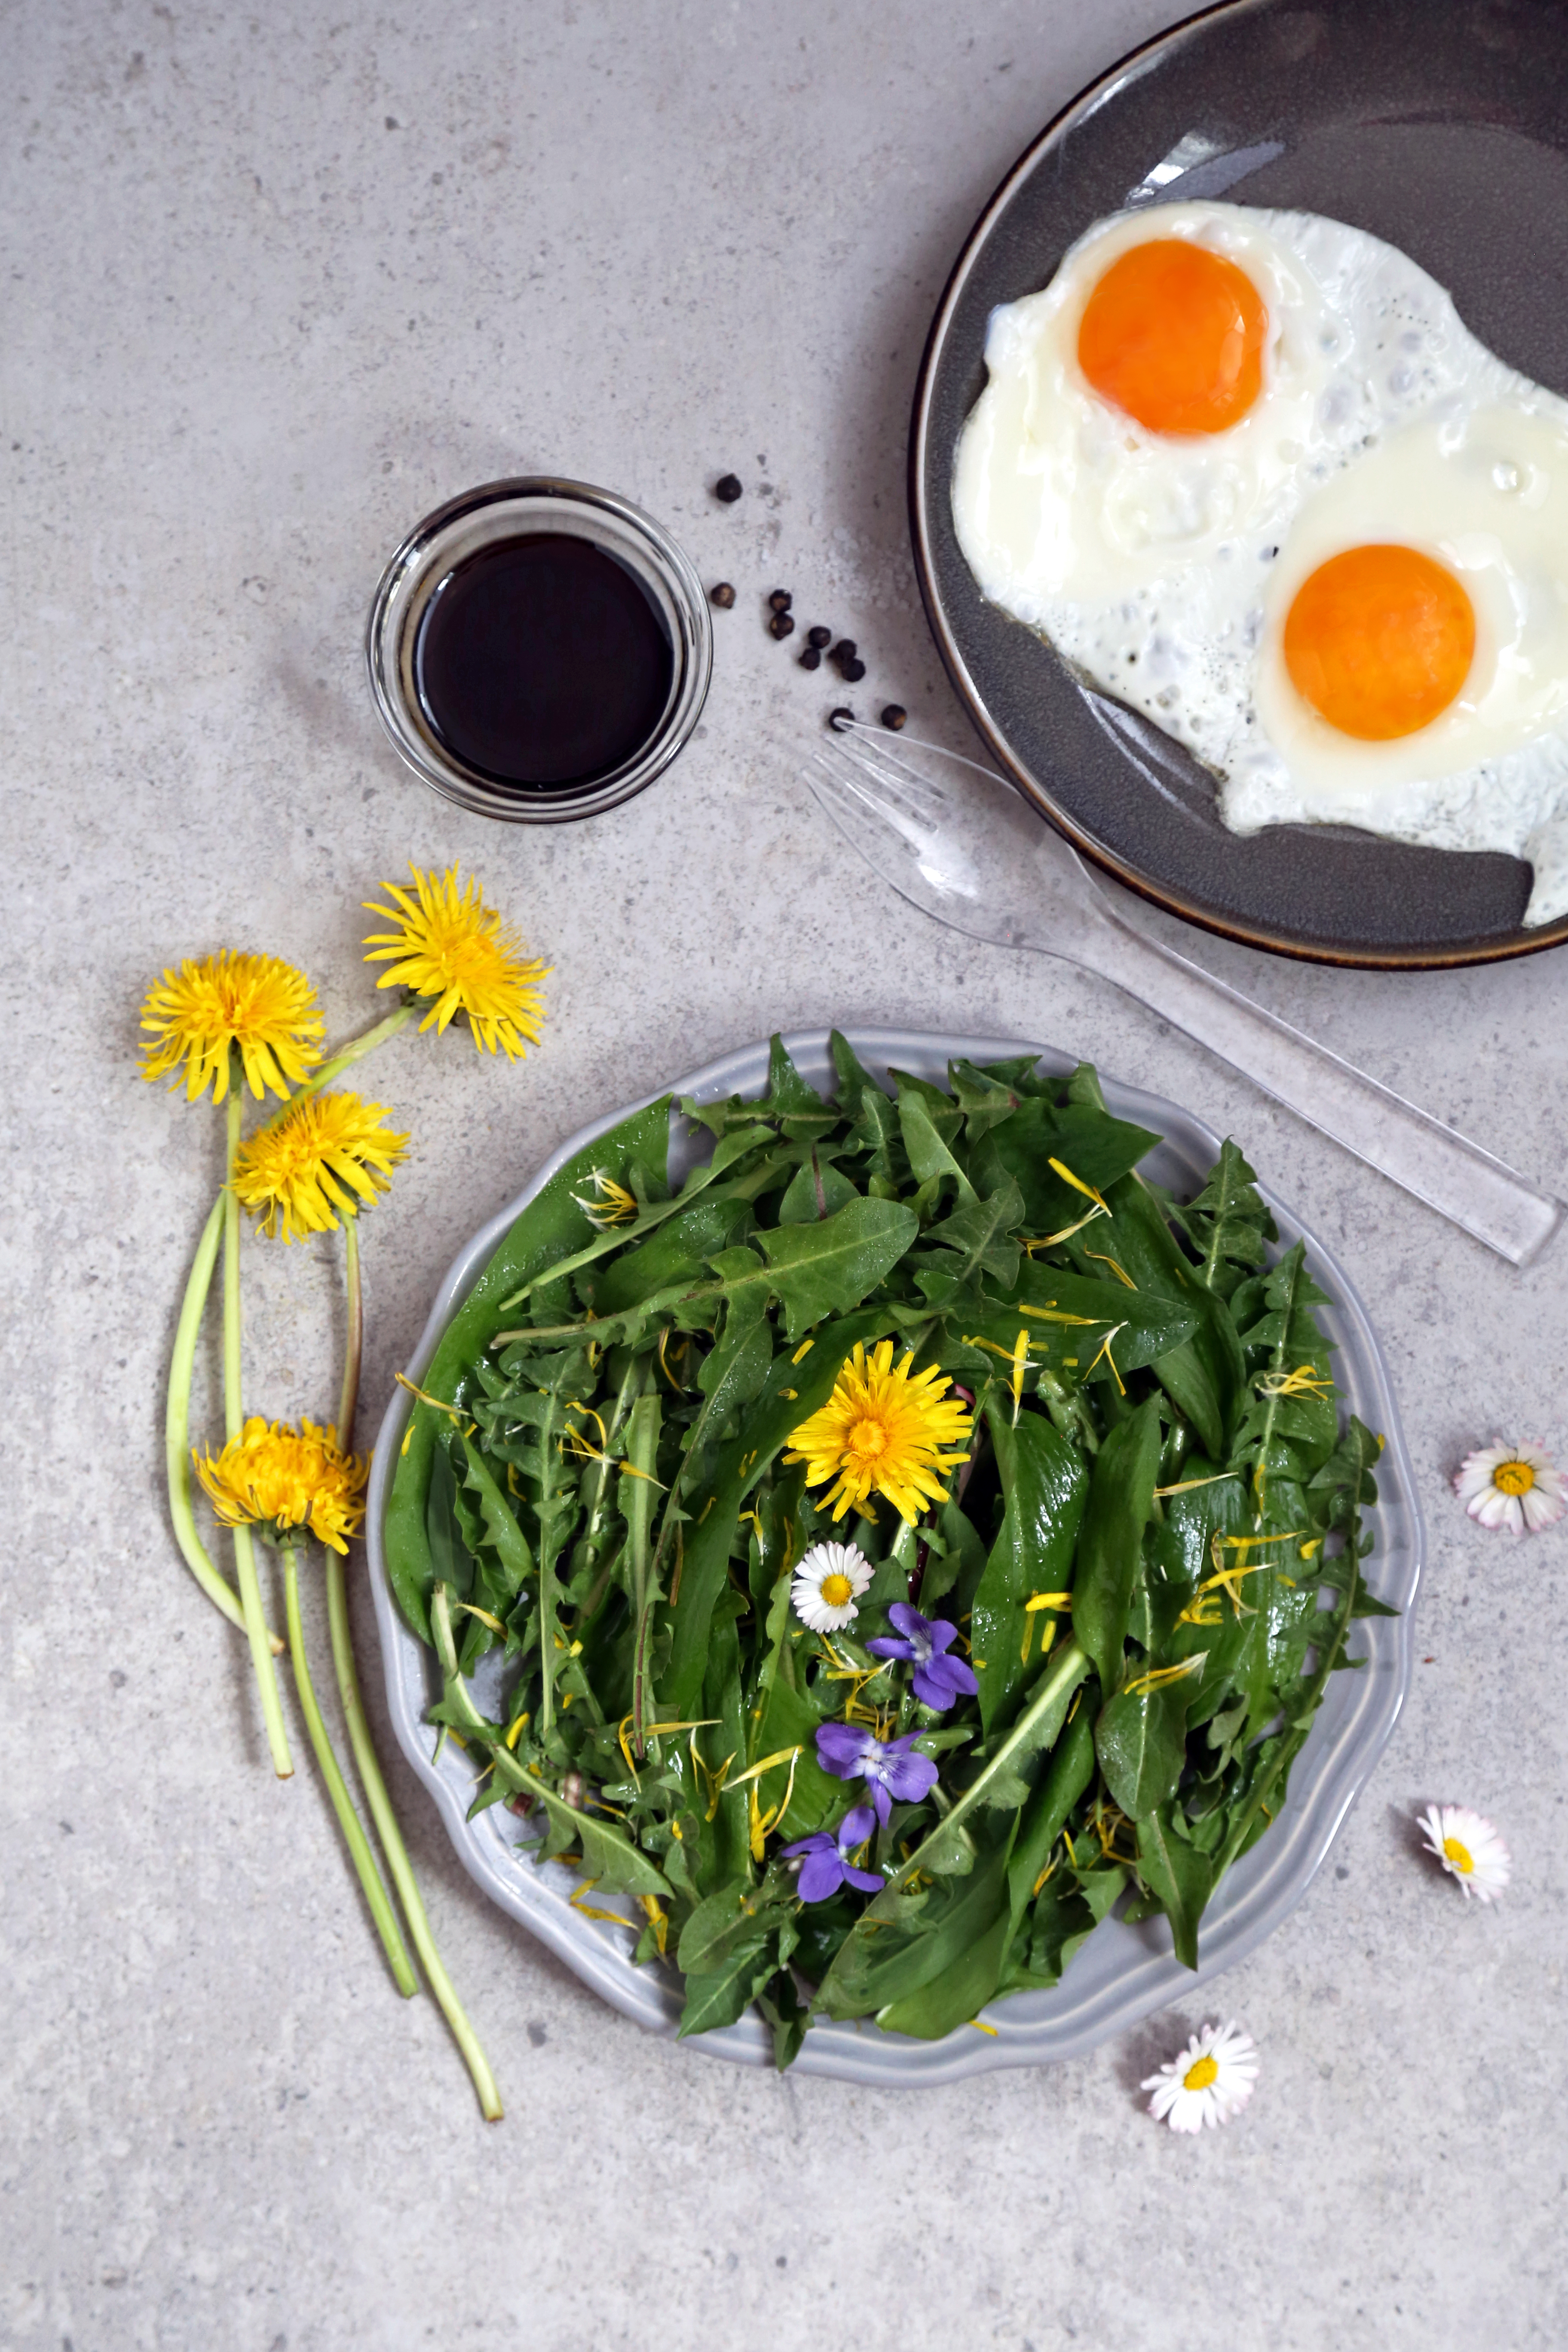 Salade de pissenlit et ail des ours - le printemps dans votre assiette - delimoon.com